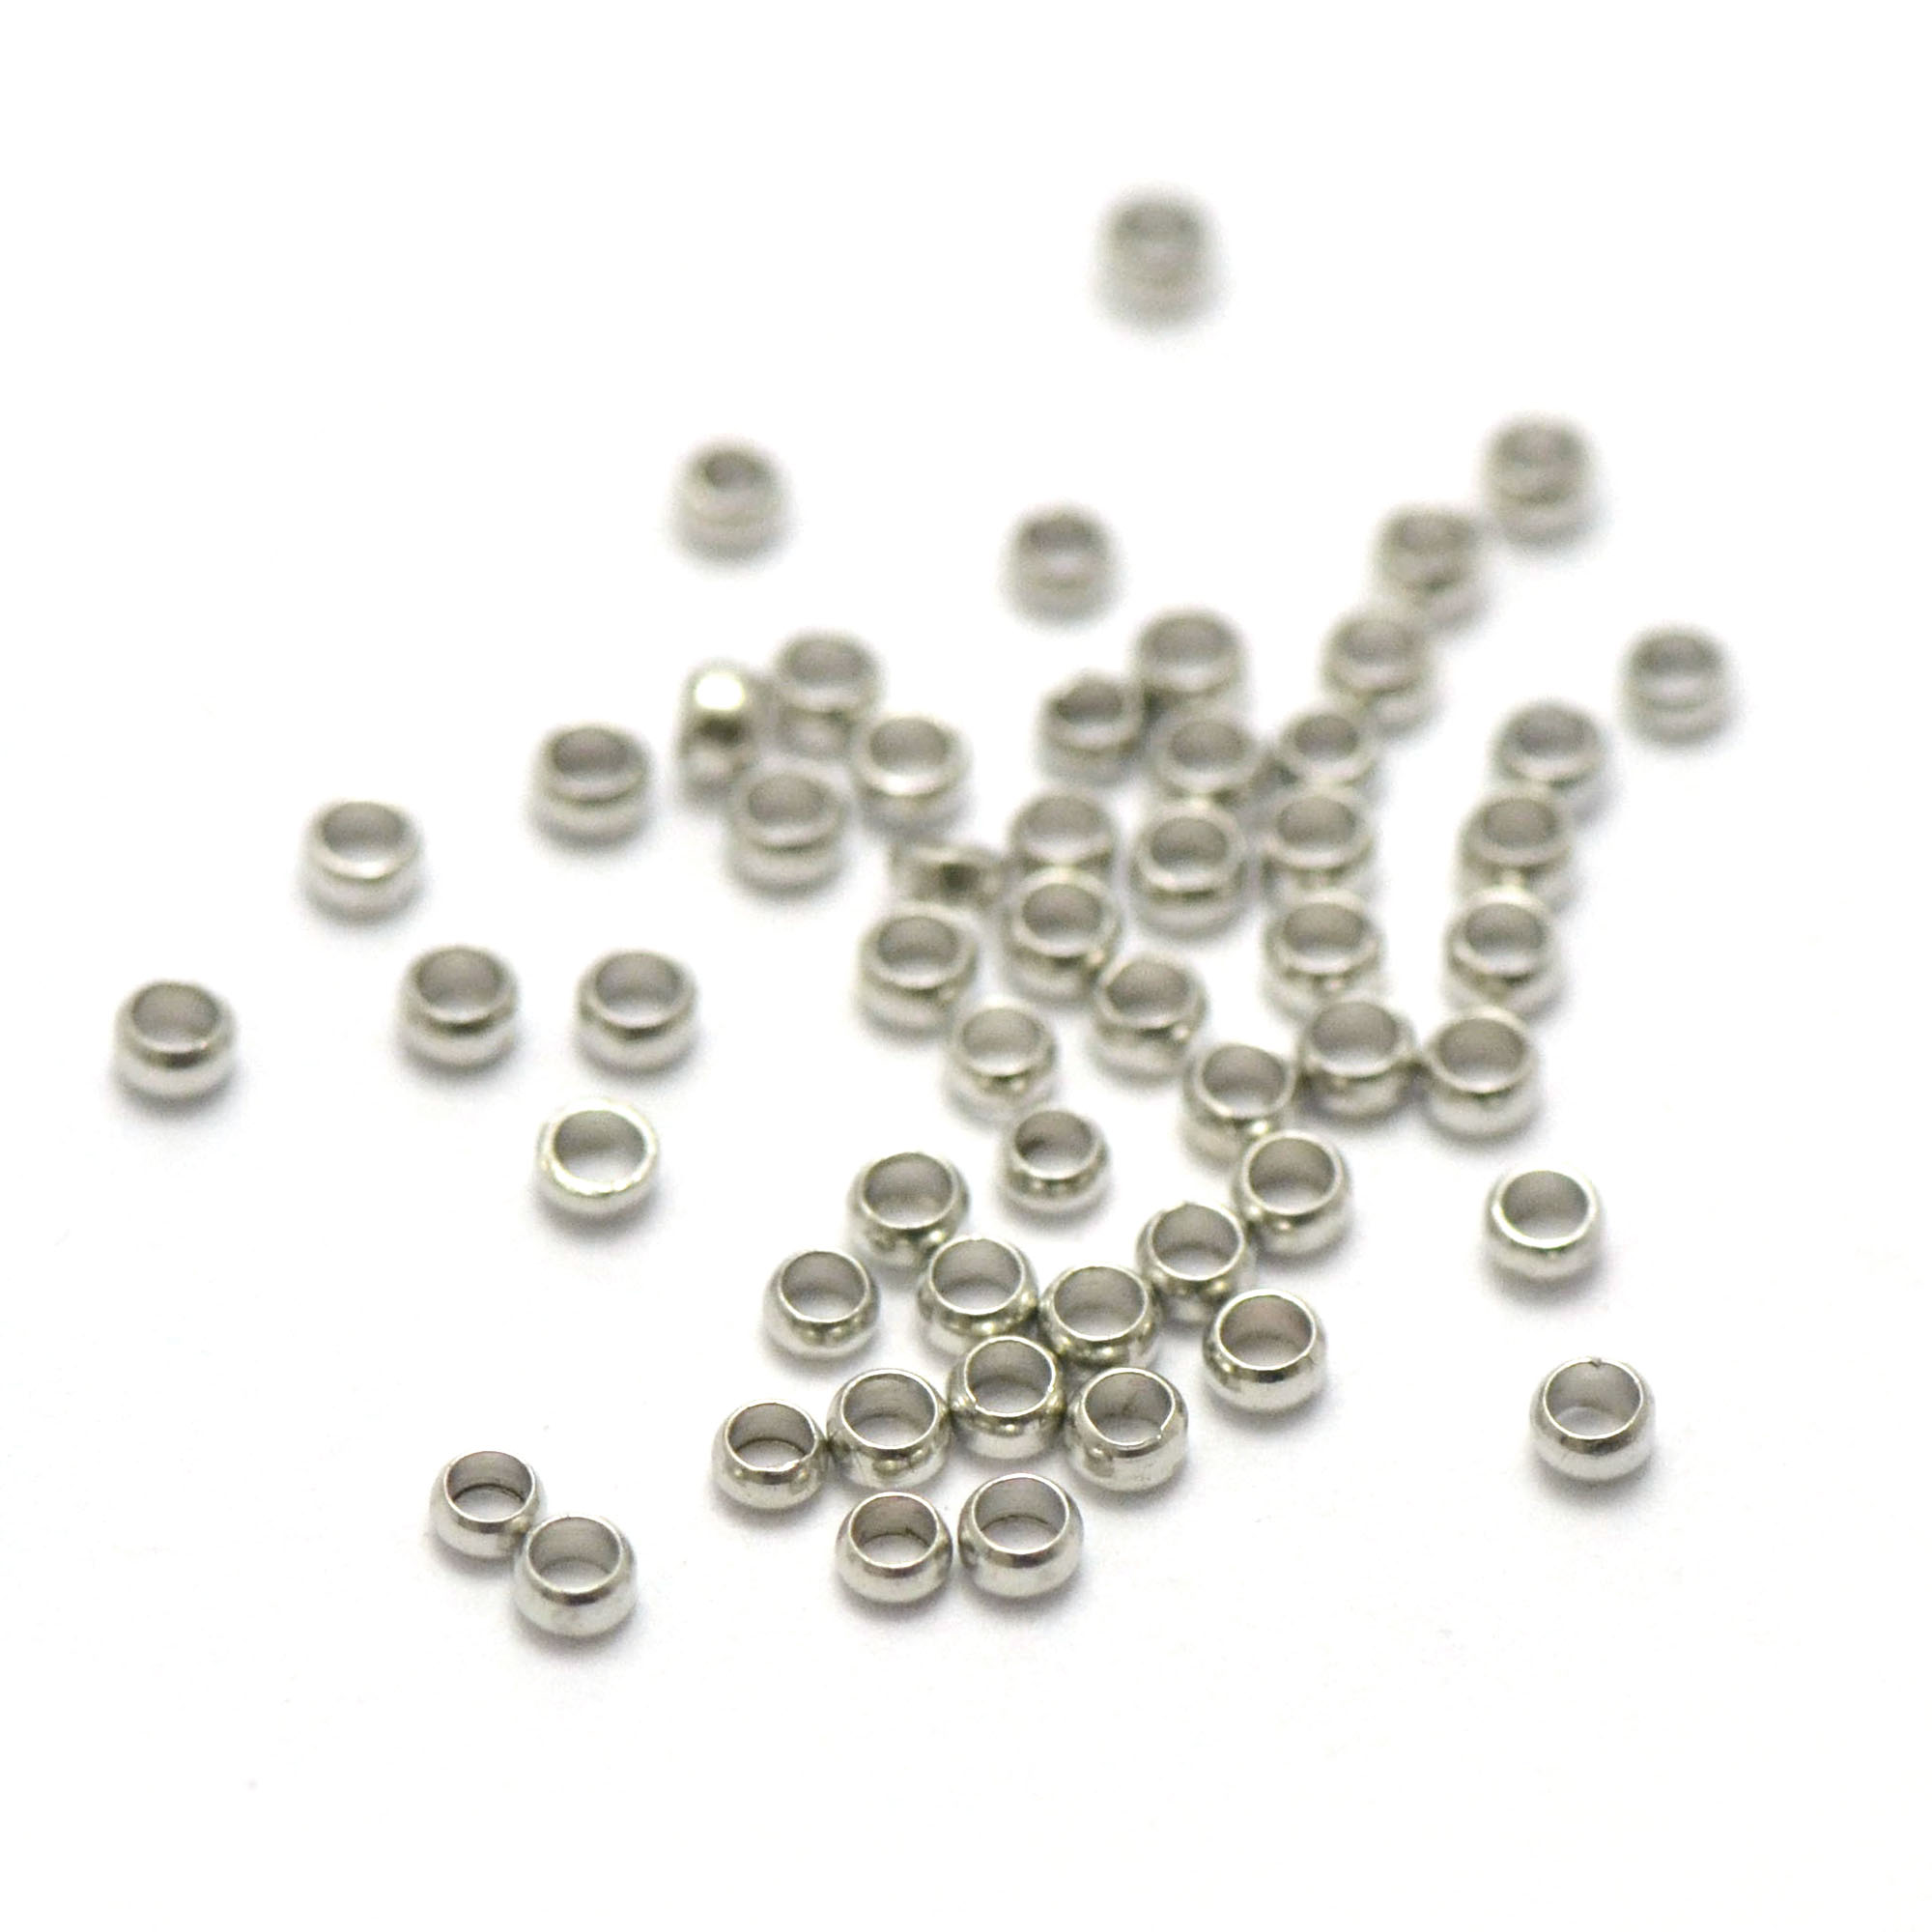 5g environ 240 perles à écraser 2.5 mm, argenté